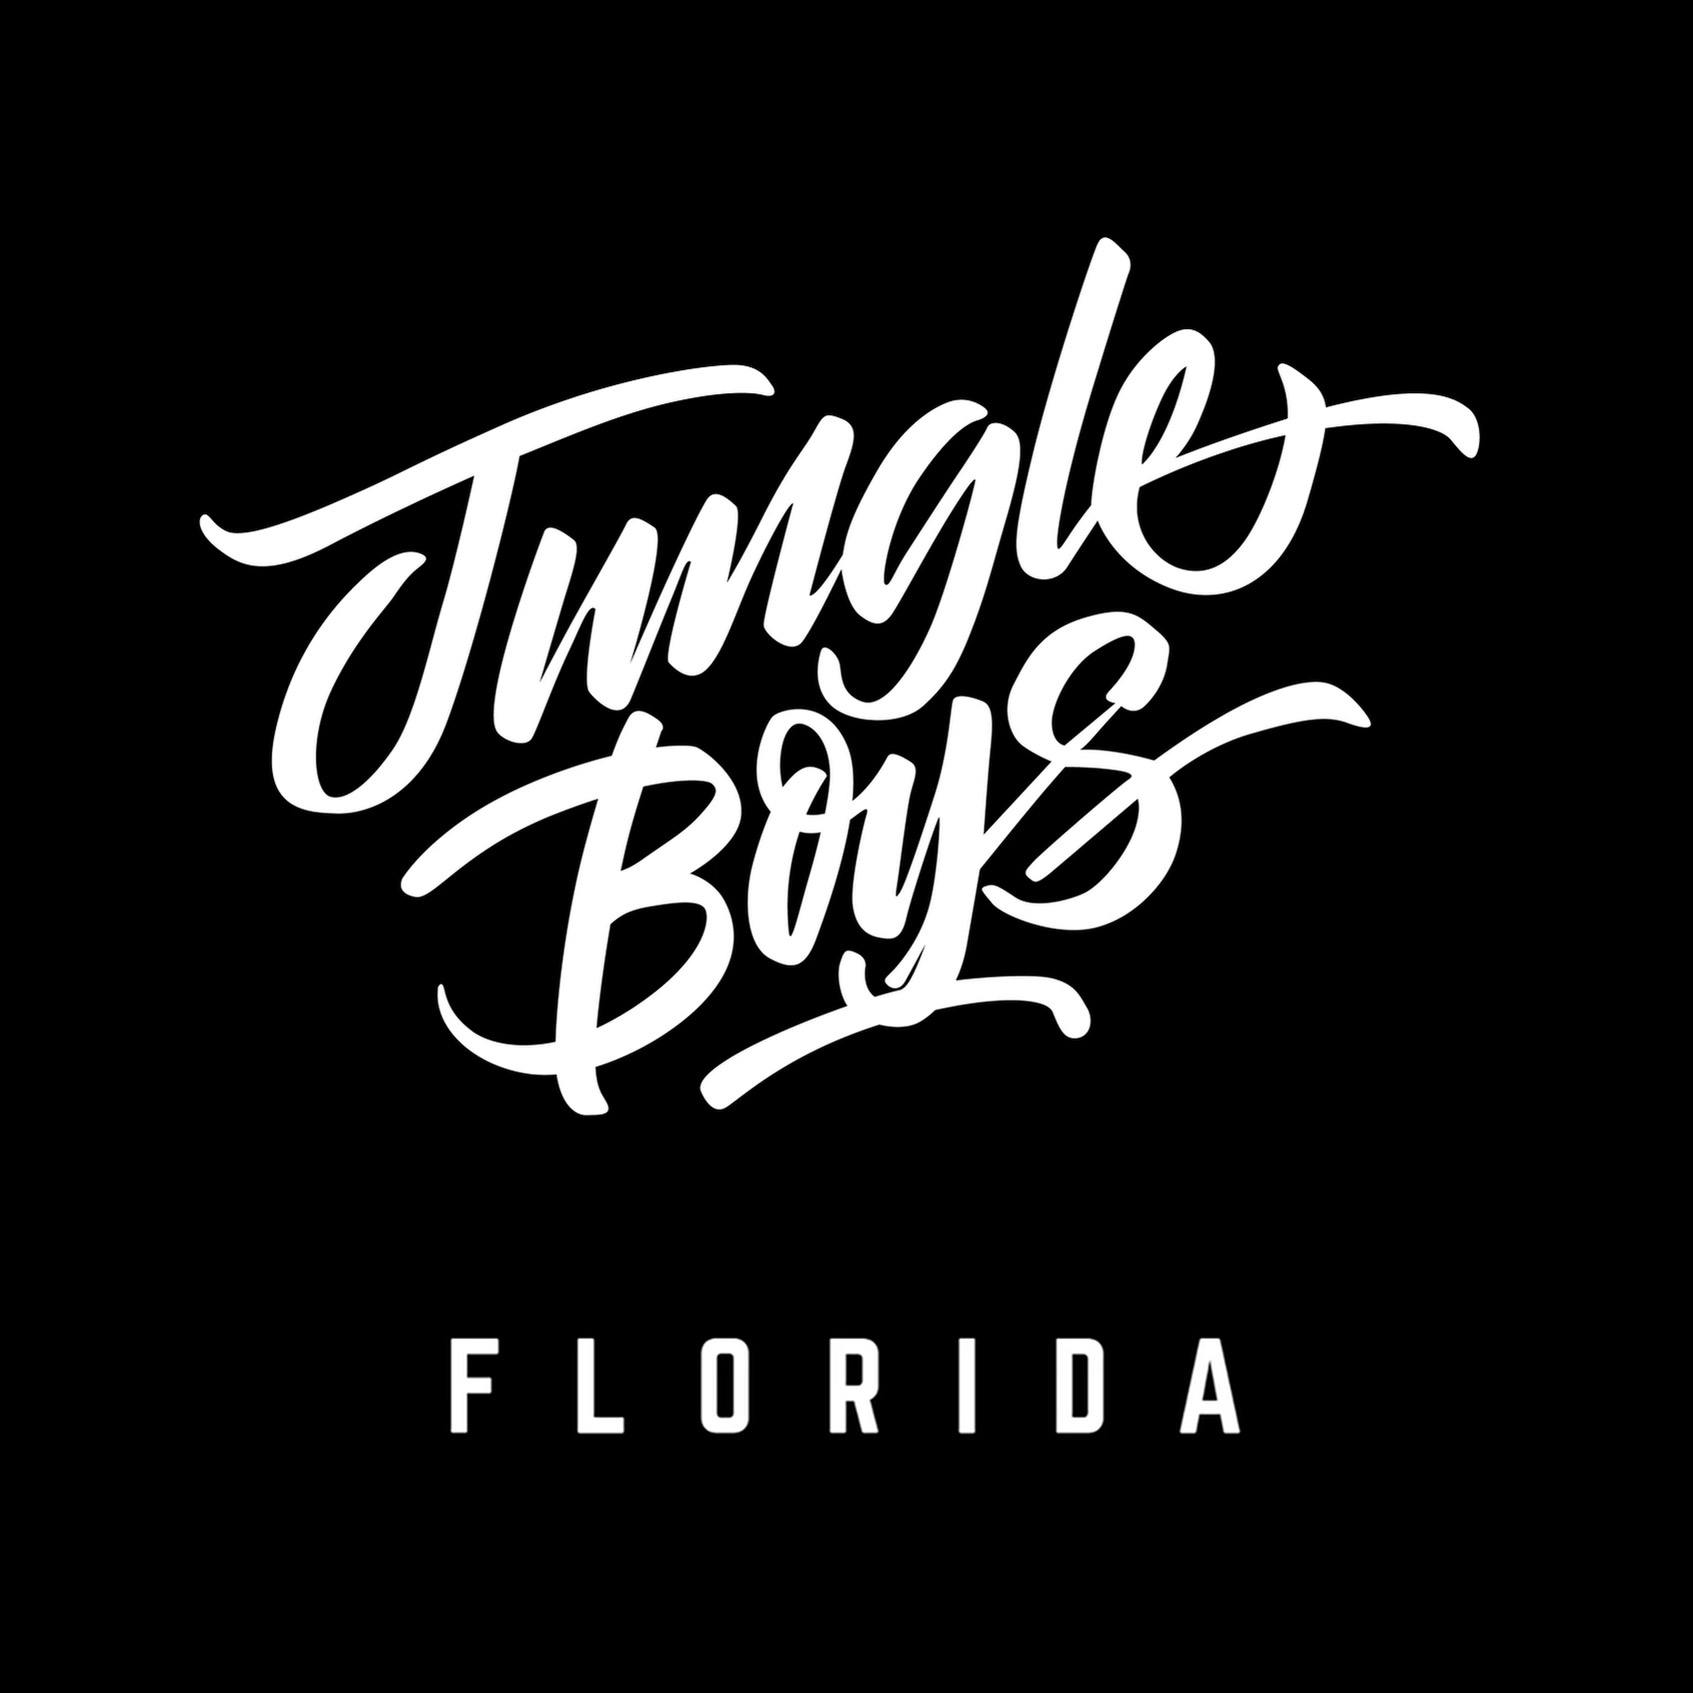 Jungle Boys Miami Beach